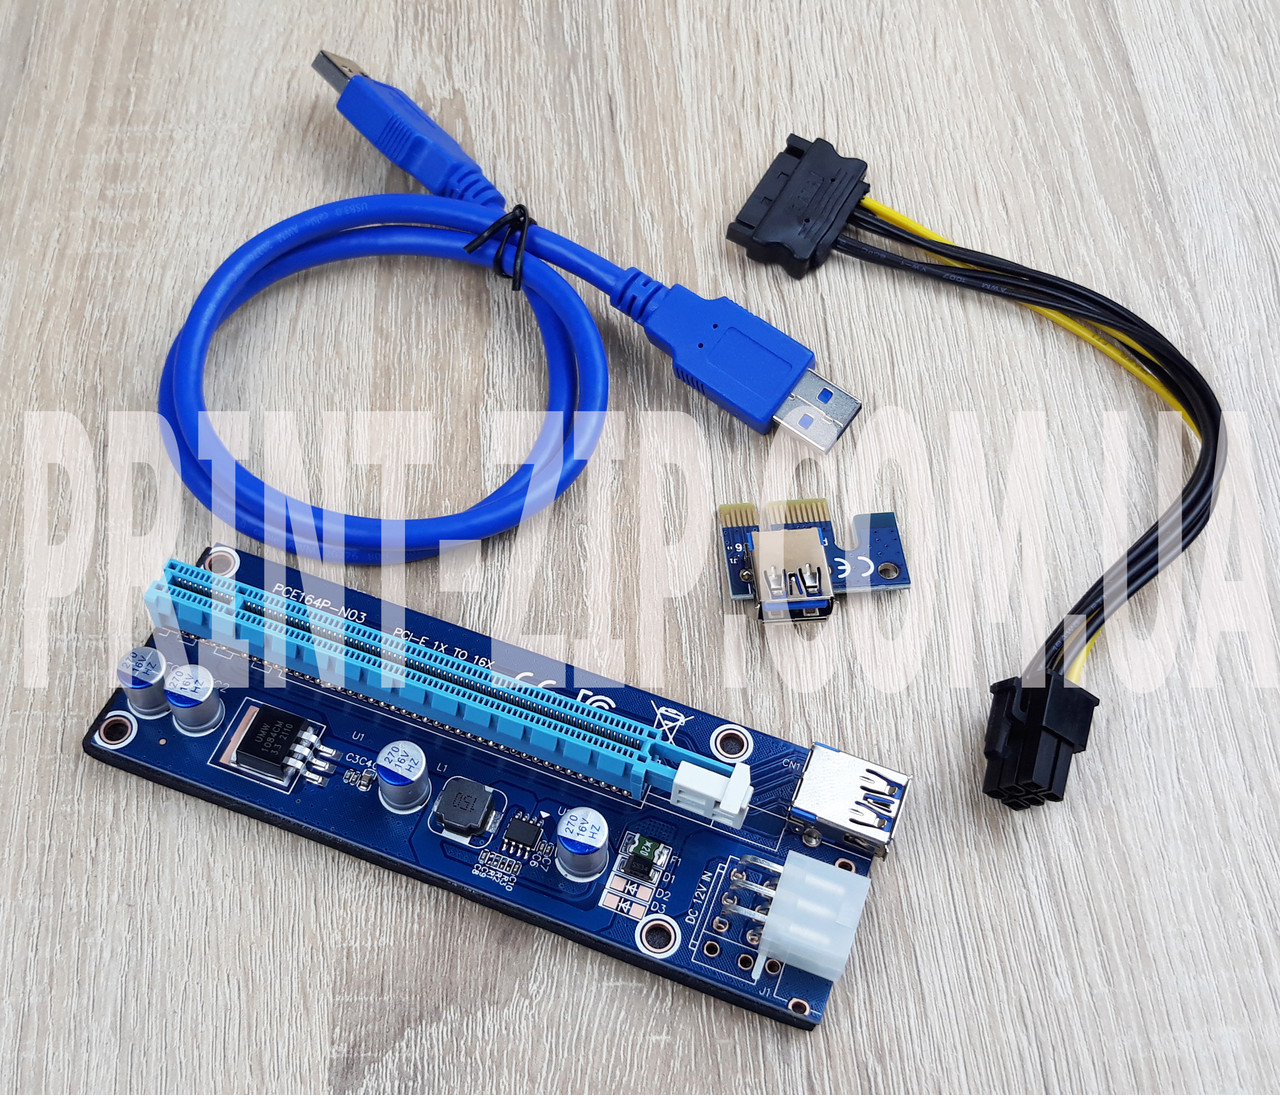 Райзер (перехідник, подовжувач, плата розширення) VER006C USB 3.0 PCI-E 1X-16X Riser для відеокарт 60 см sata